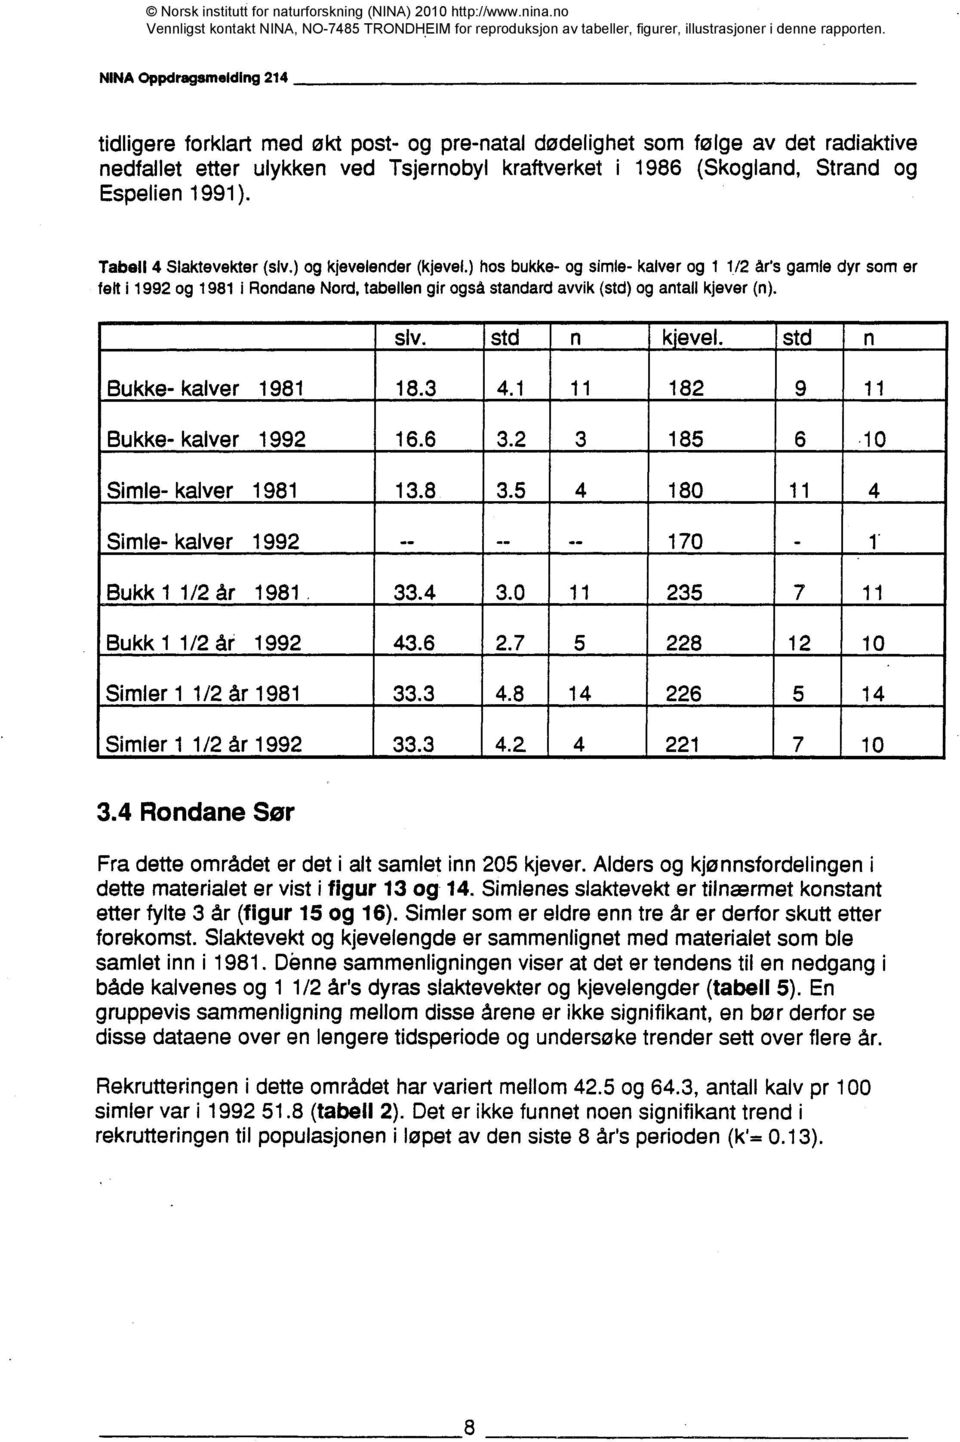 ) hos bukke- og simie- kalver og 1 1/2 år's gamle dyr som er felt 11992 og 19811 Rondane Nord, tabellen gir også standard avvik (std) og antall kjever (n). siv. std n k'evel.